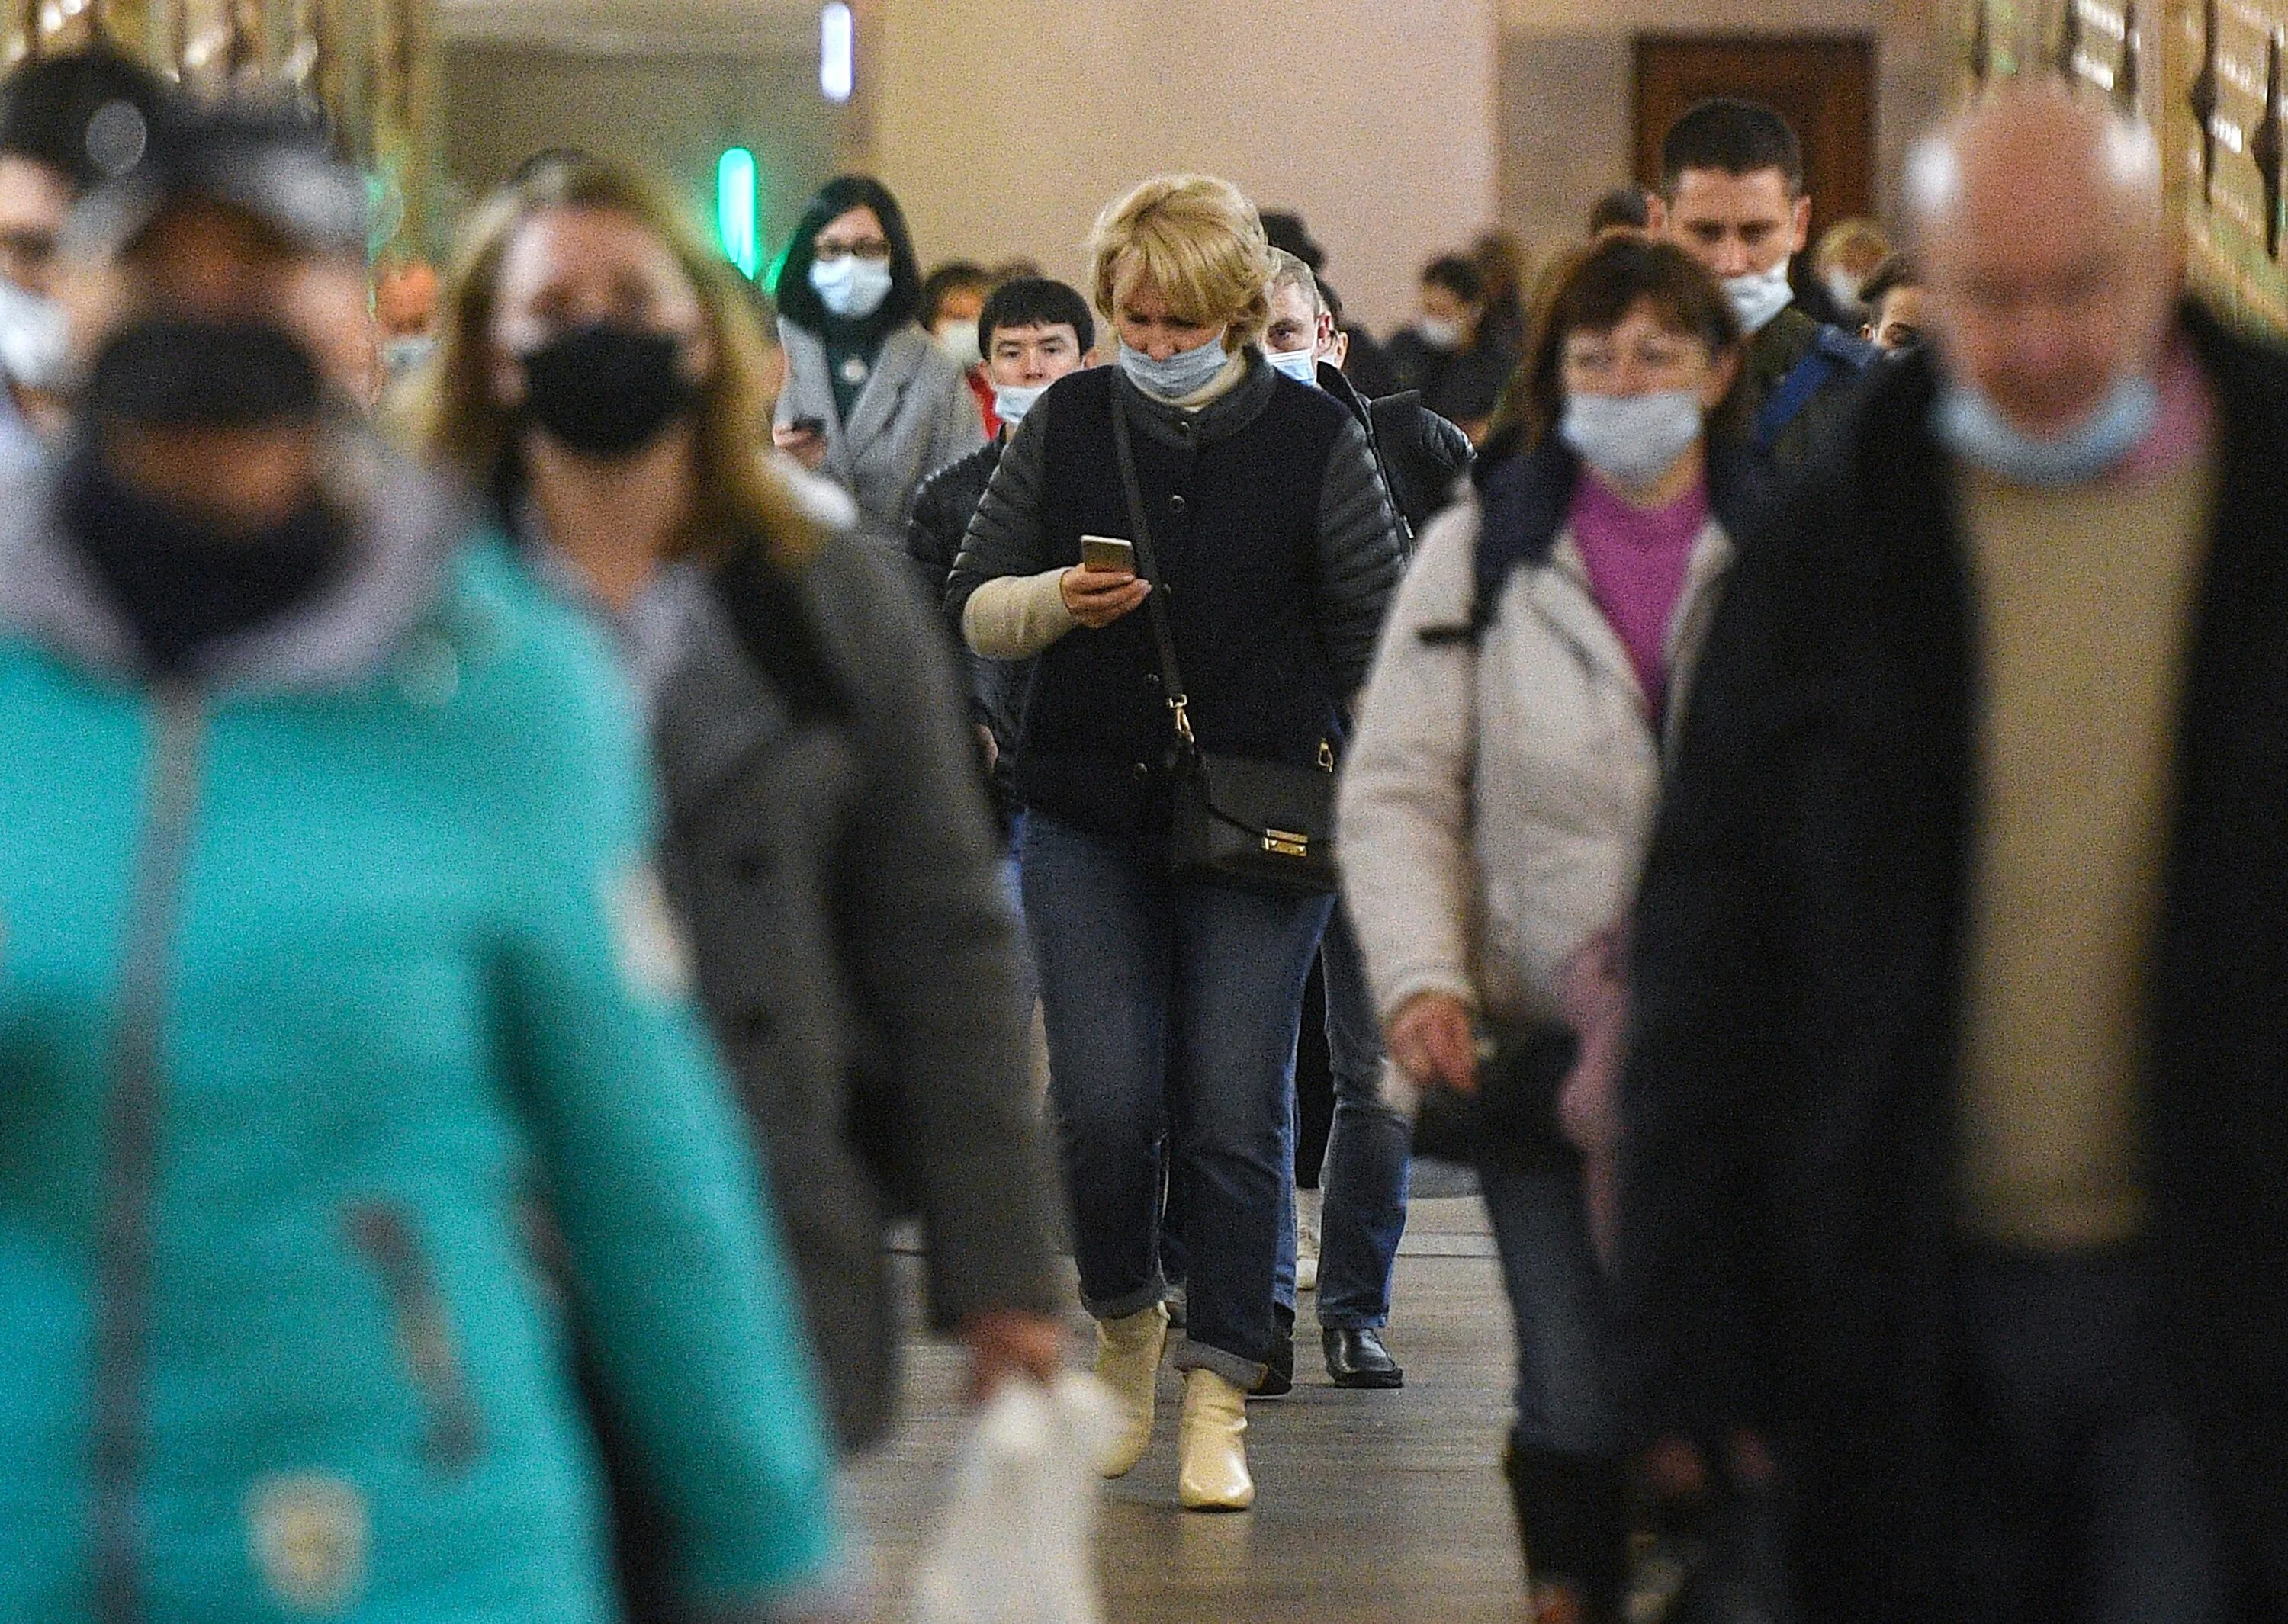 Передают риа новости. Эпидемия гриппа в городе толпа людей. Пандемия Covid 19 в РФ. Завершение пандемии.